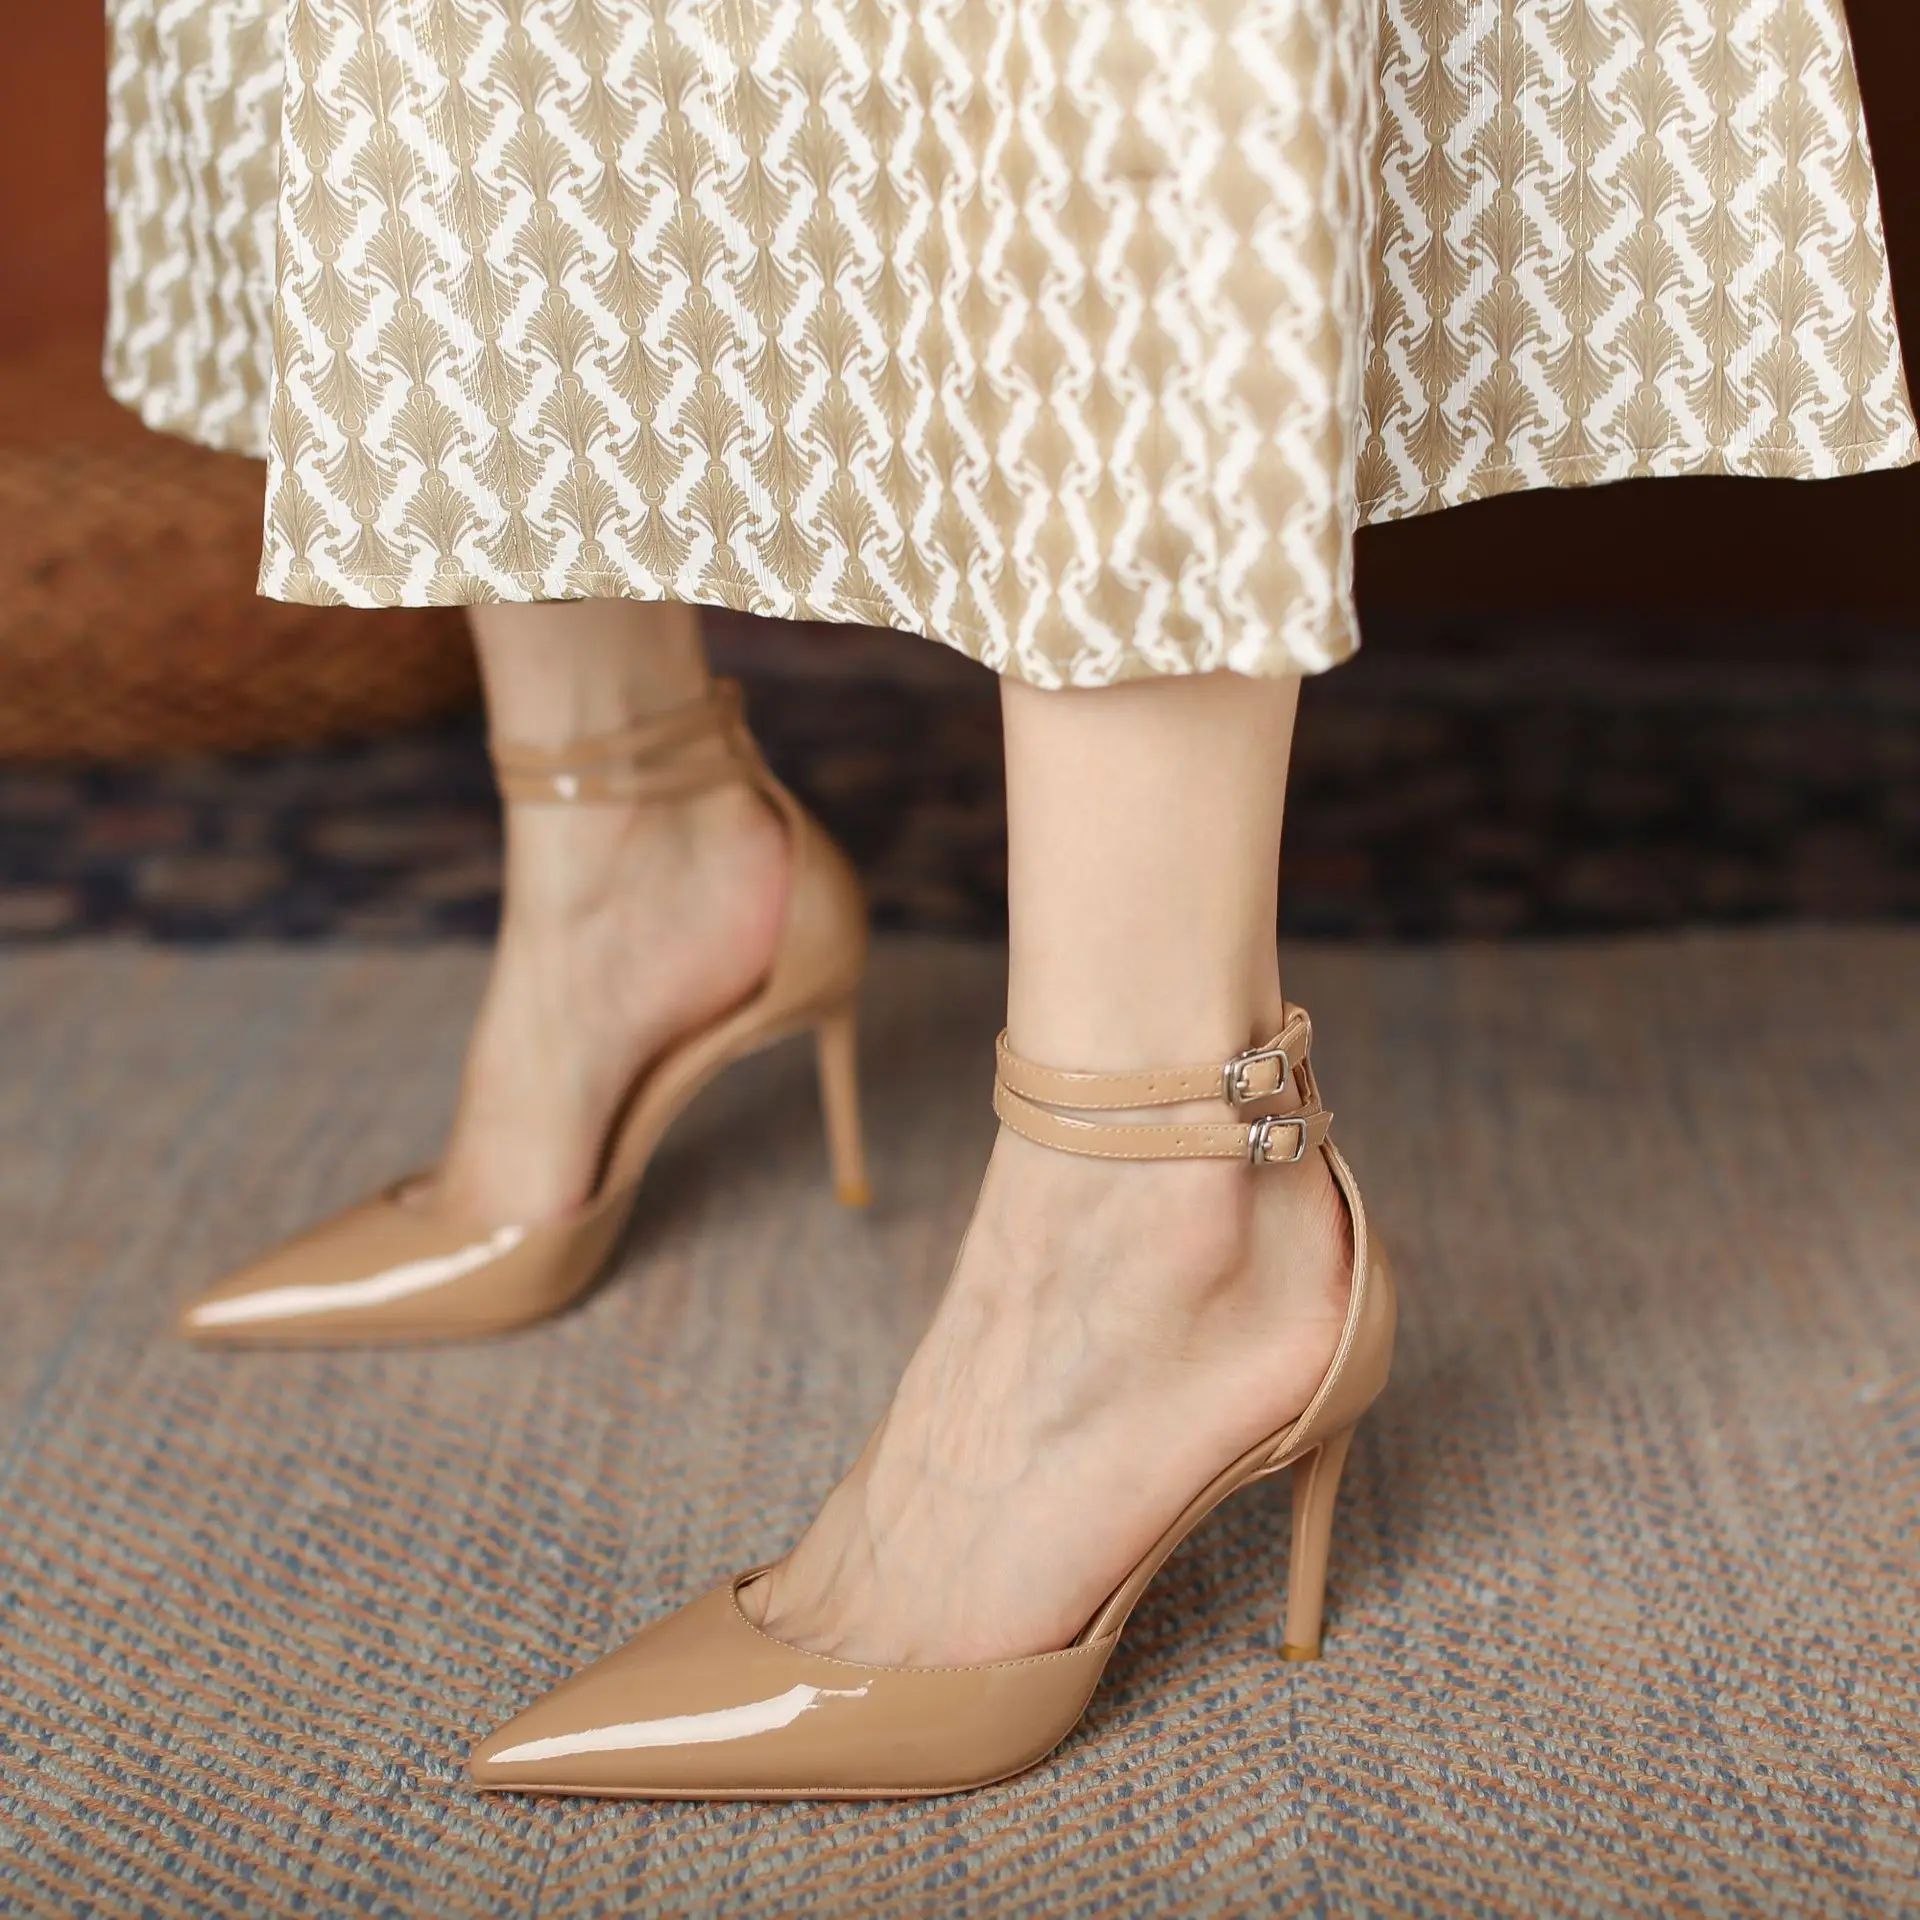 Летняя обувь Свадебные женские туфли-лодочки из искусственной кожи на высоком тонком каблуке 8 см с острым носком, Женская обувь из цельного материала, Дизайнерская обувь для вечеринок, Цвет Naked 1